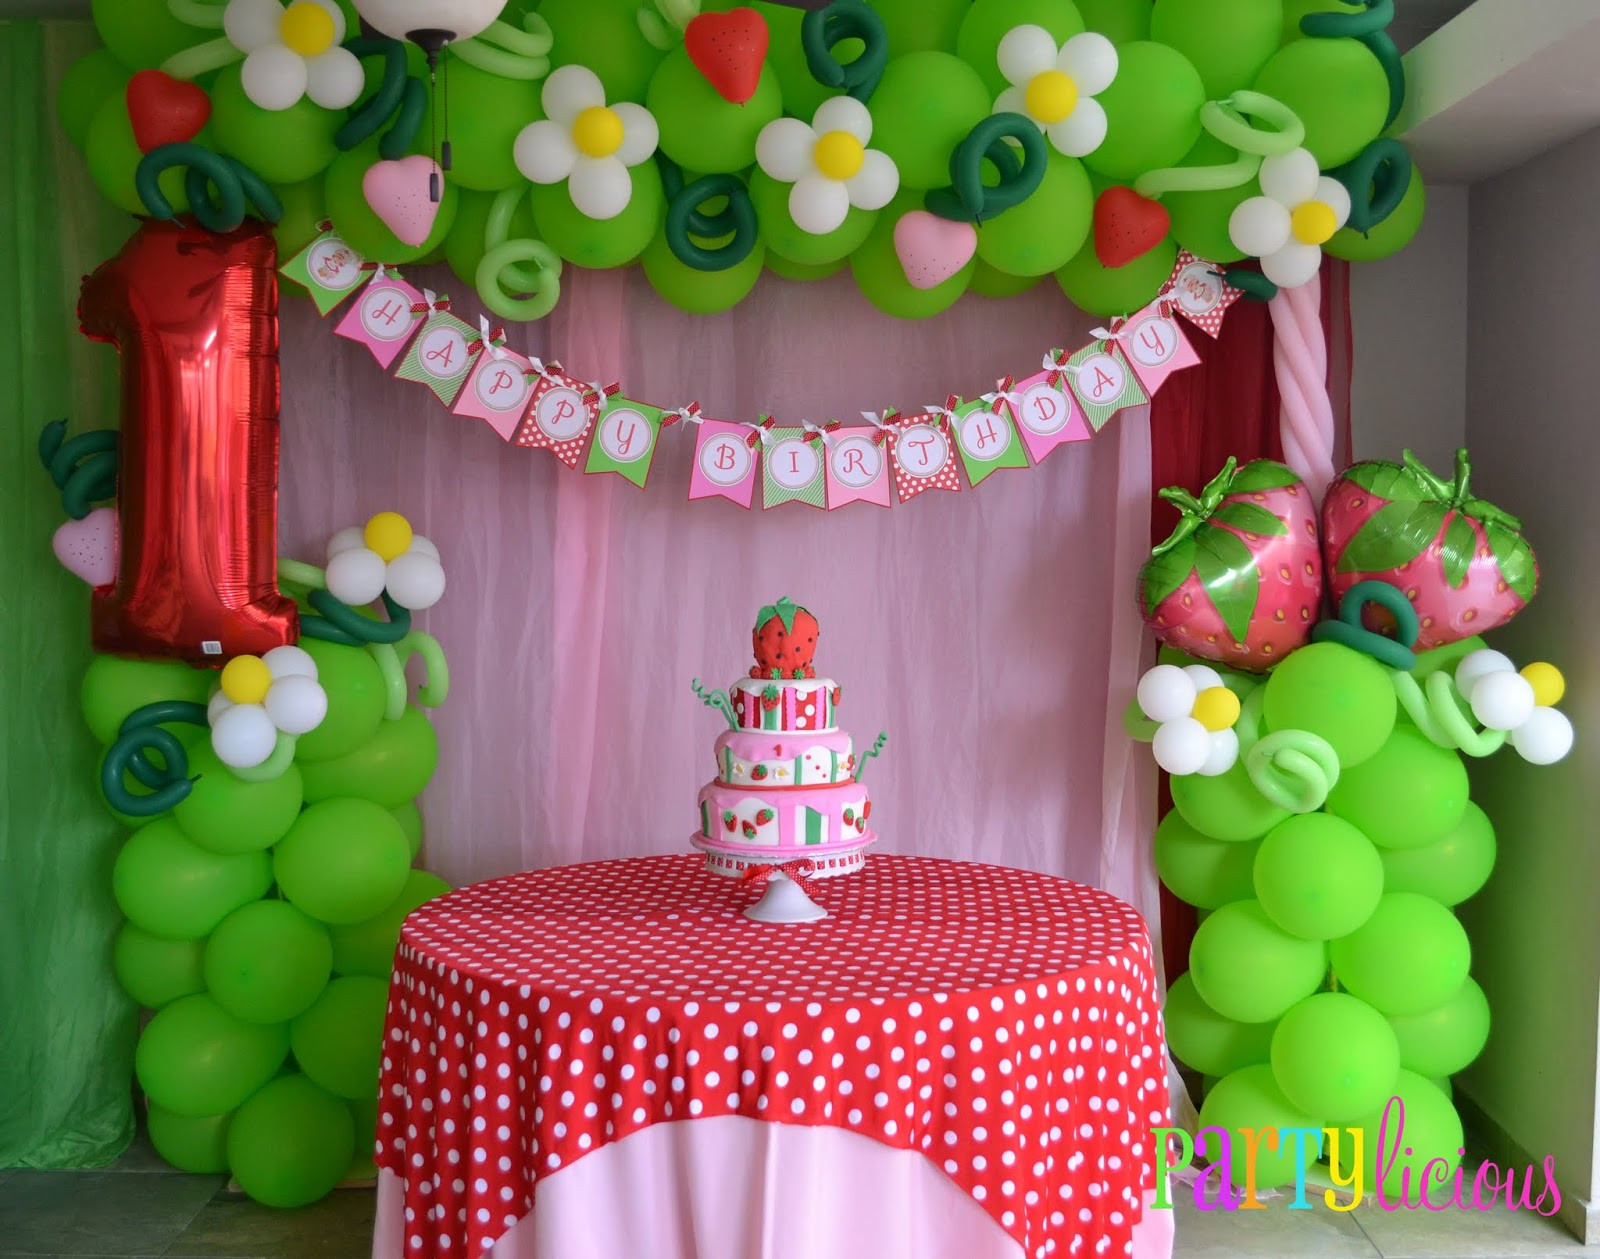 Strawberry Shortcake Birthday Decorations
 Partylicious Events PR Vintage Strawberry Shortcake